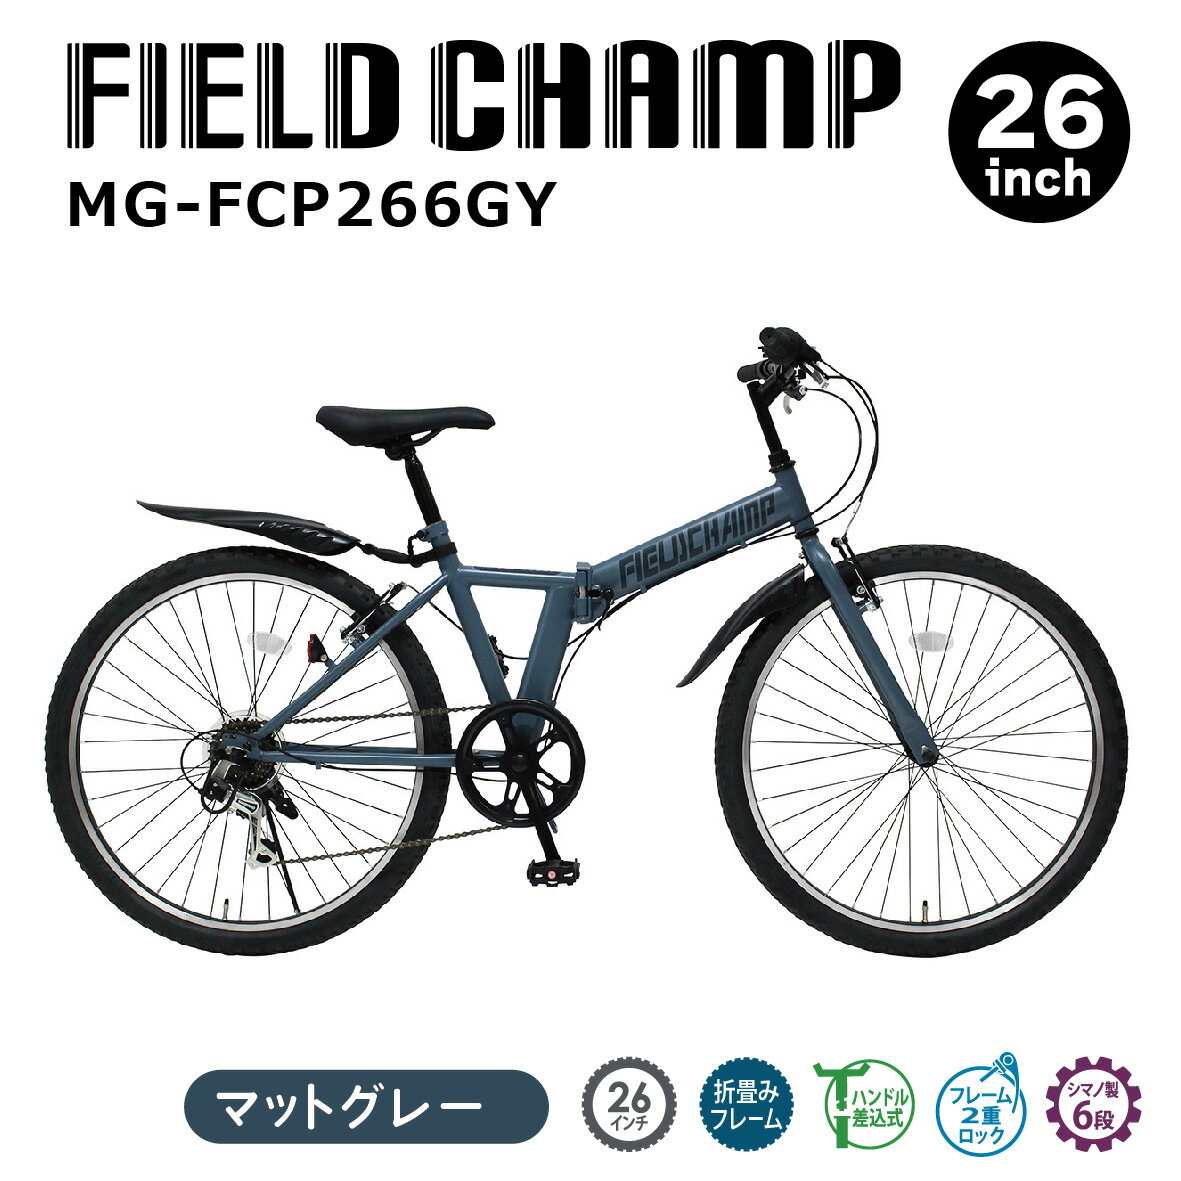 ミムゴ FIELD CHAMP 26インチ折畳みマウンテンバイクGY MG-FCP266GY マットグレー フィールドチャンプ